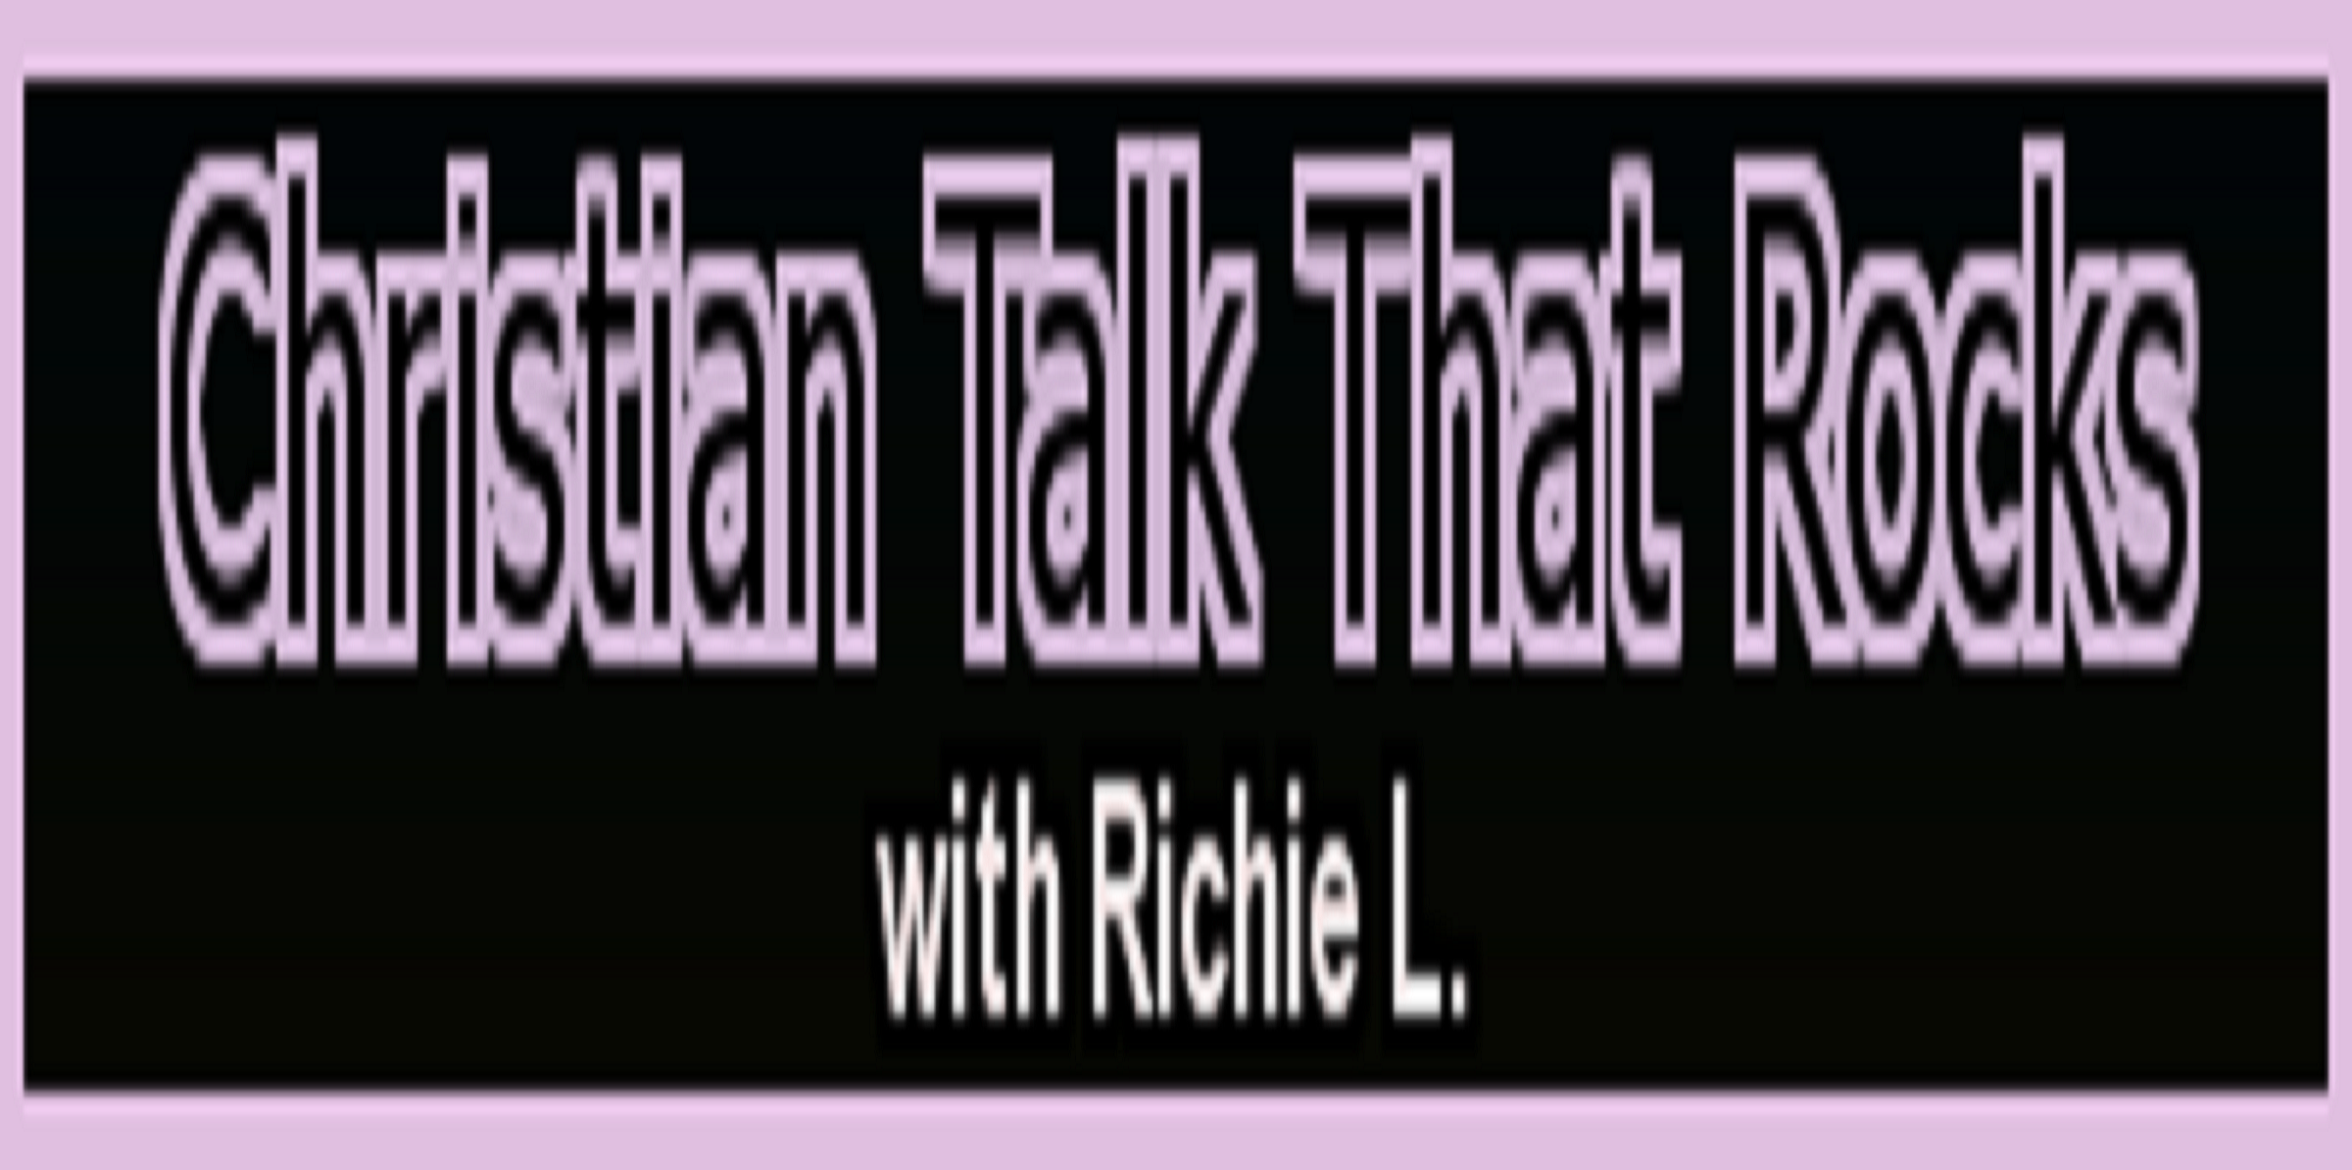 Christian-Talk-That-Rocks-Banner-Banner